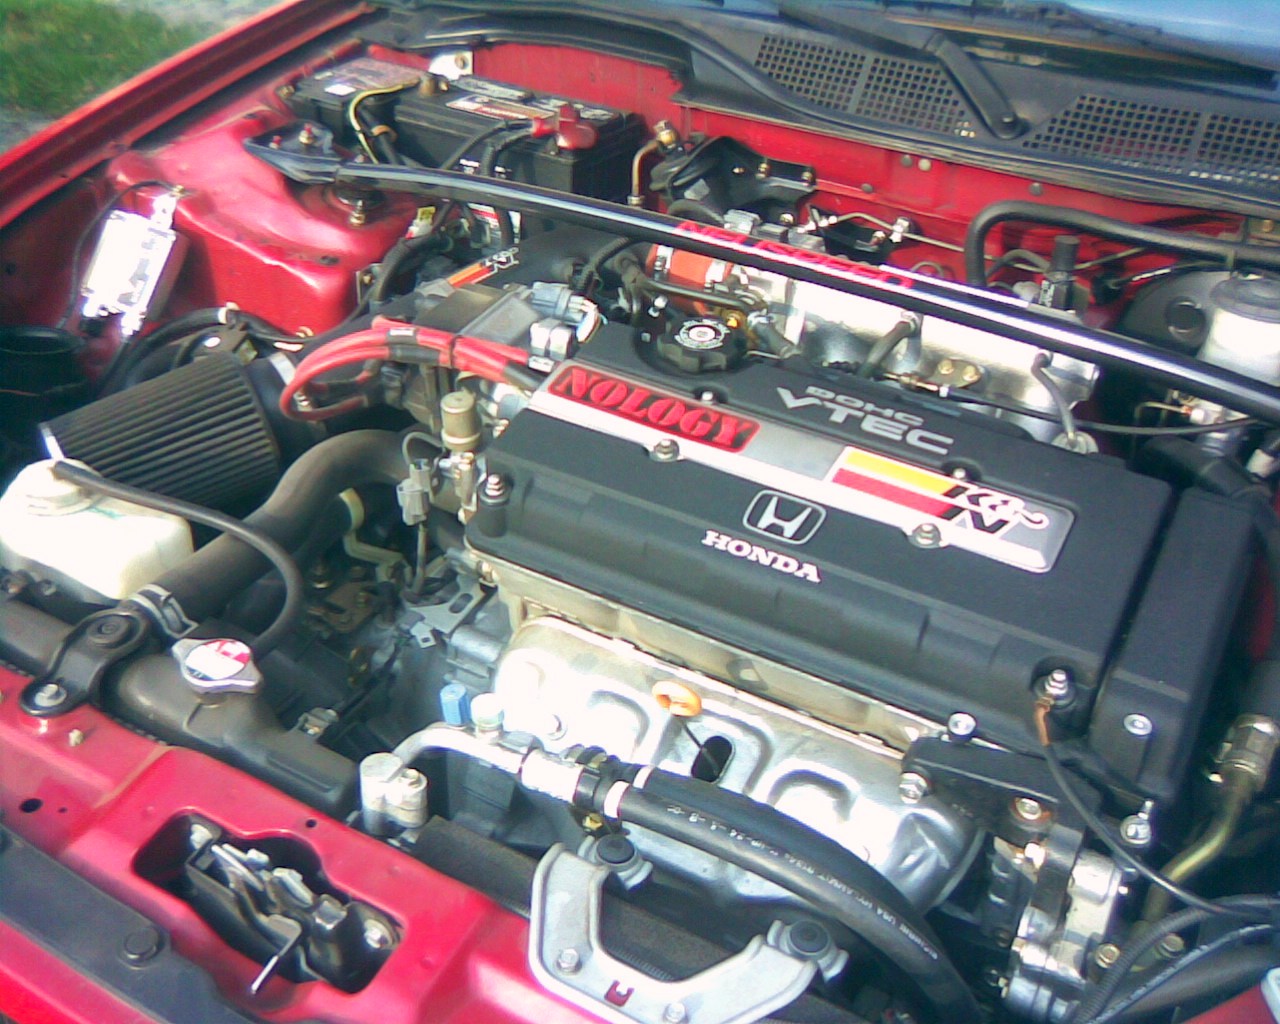 2000 Honda civic si engine spec